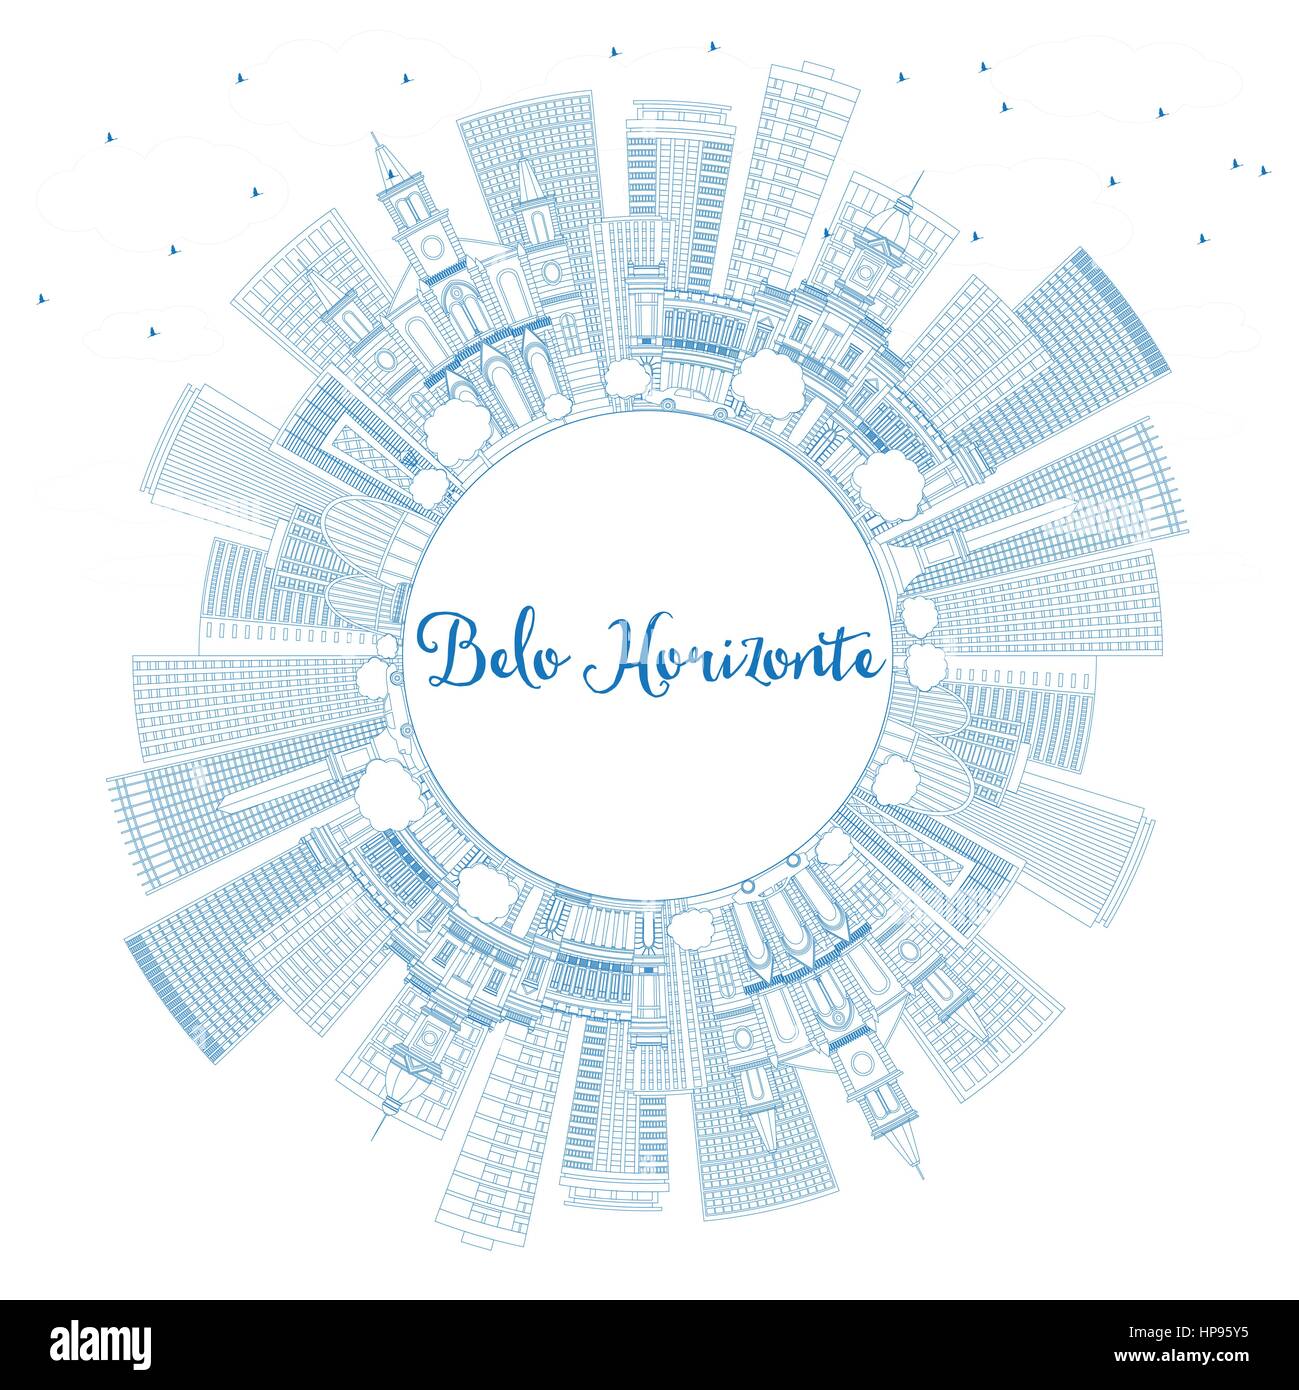 Profilo di belo Horizonte skyline con edifici blu e copia spazio. illustrazione vettoriale. viaggi di affari e di turismo con il concetto di architettura moderna. Illustrazione Vettoriale